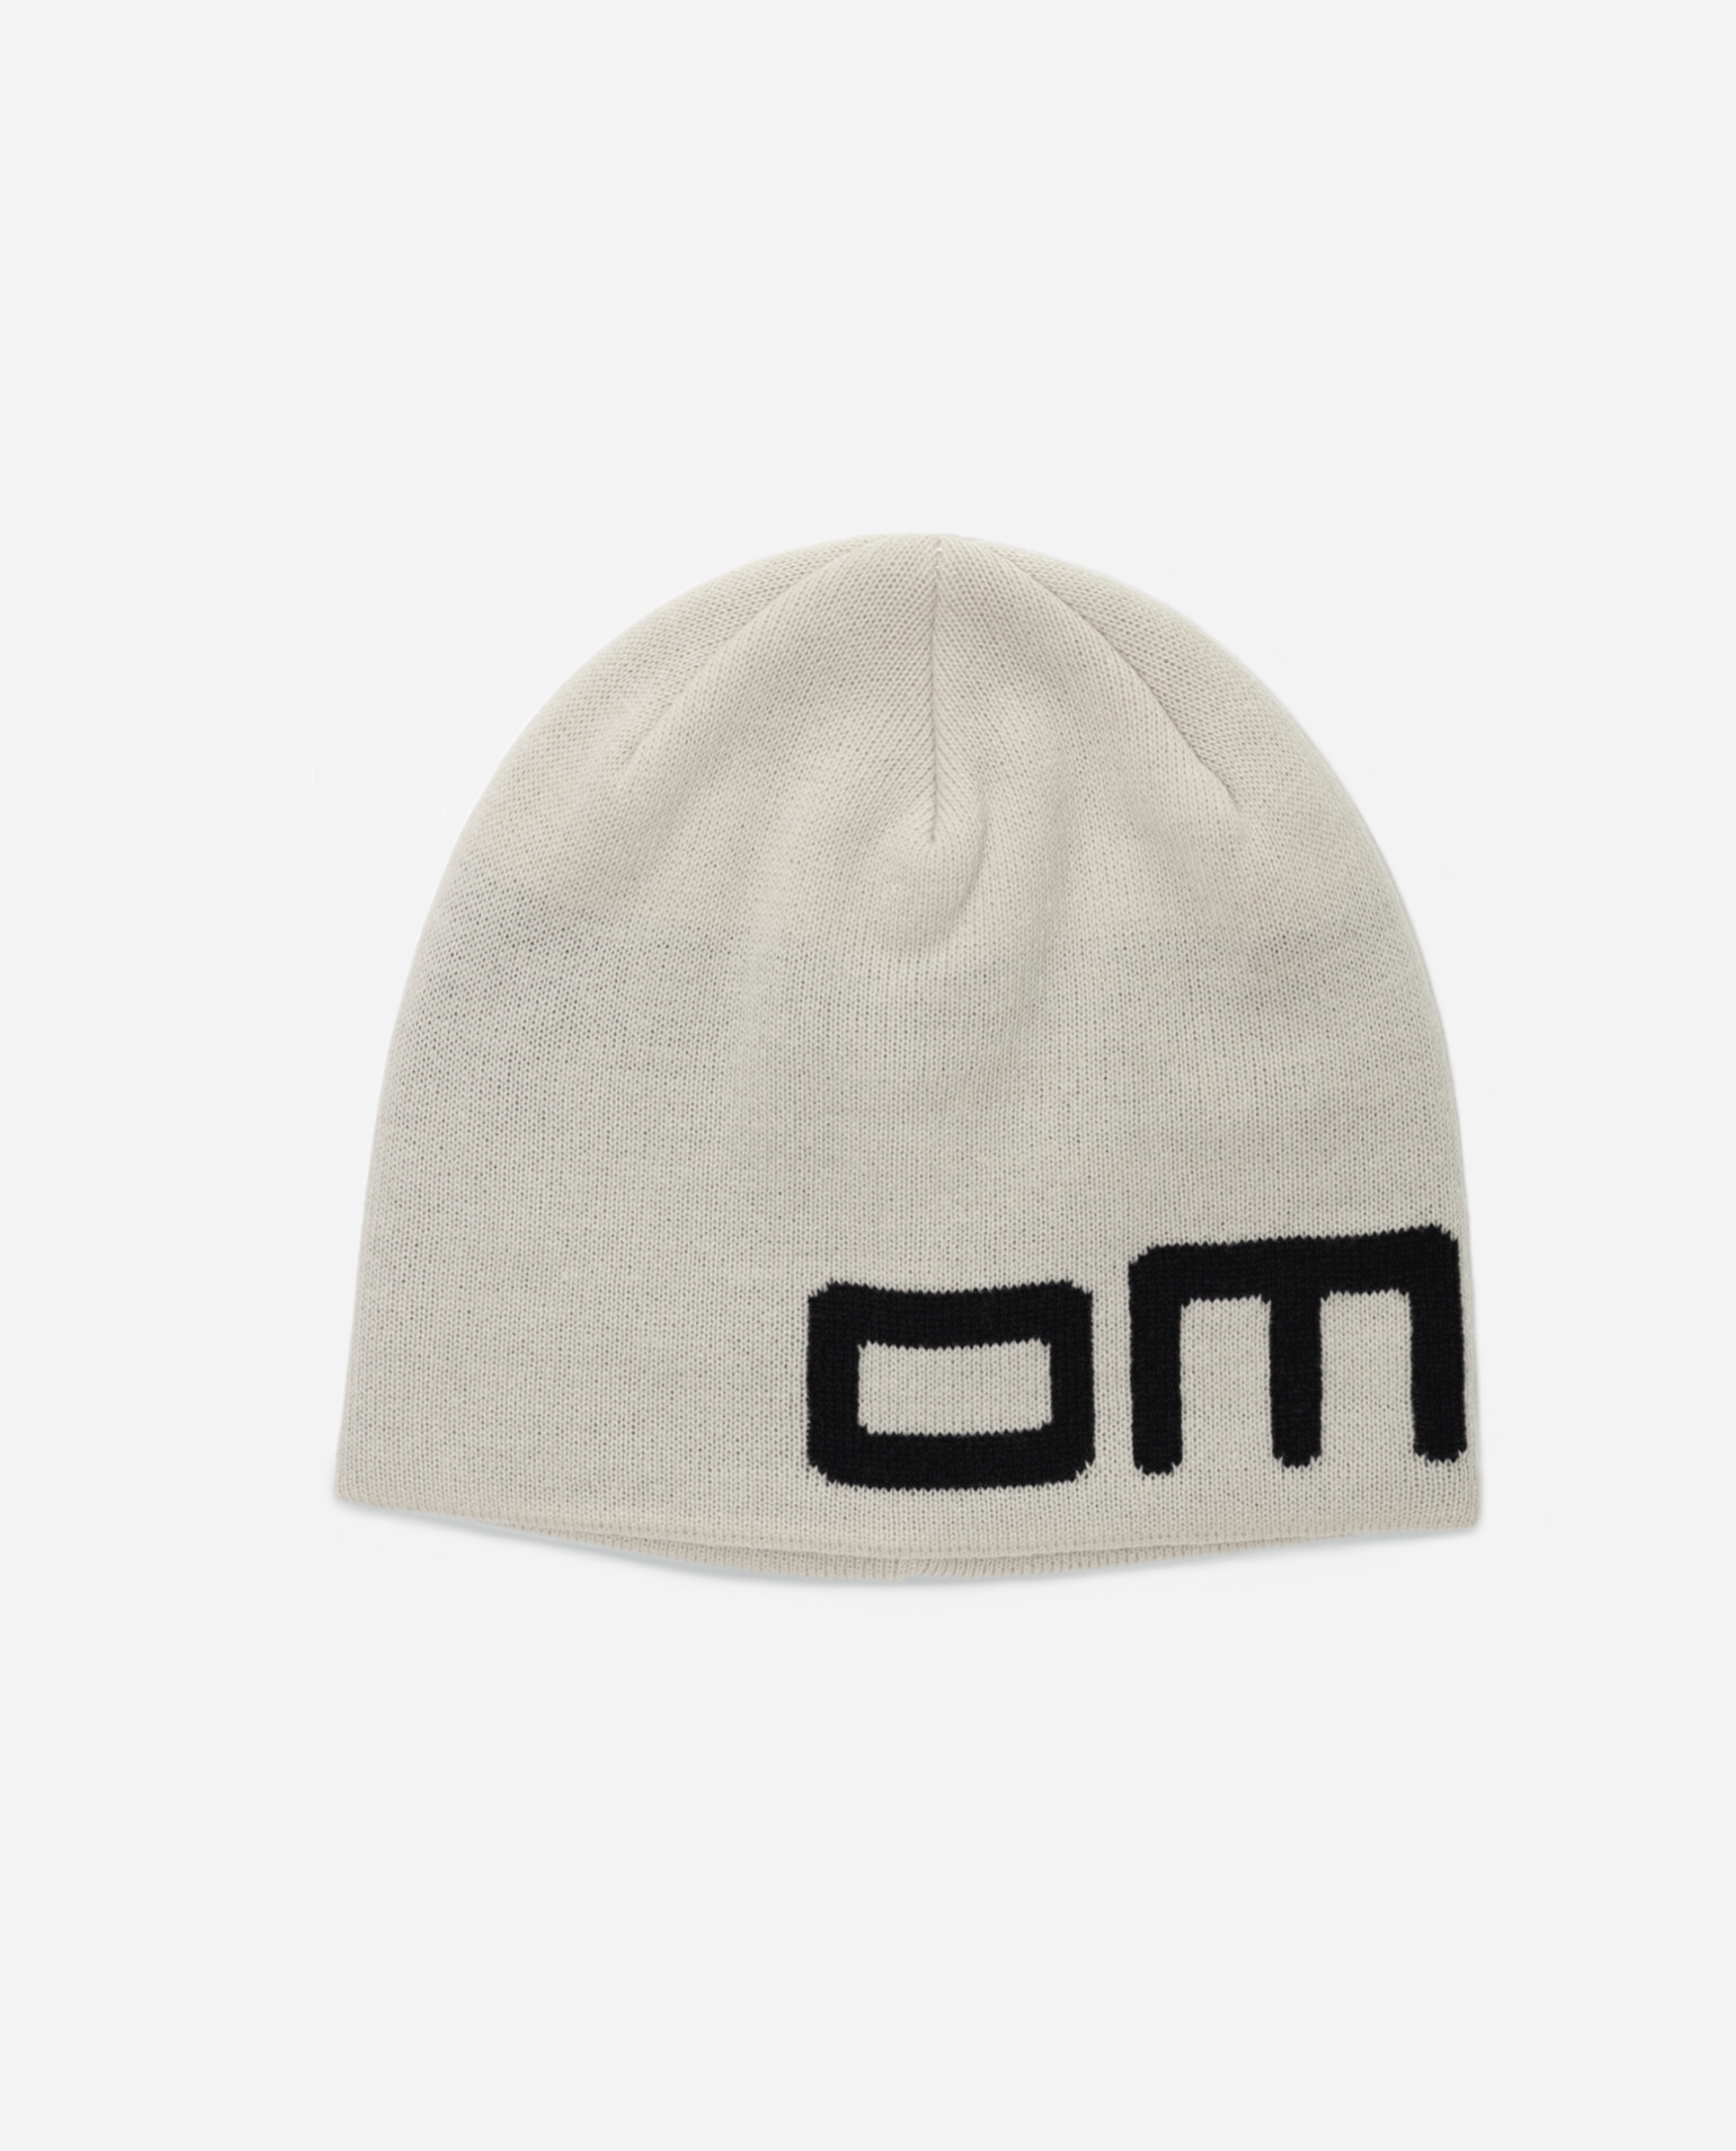 oMA 426 SKULL CAP (IVORY)